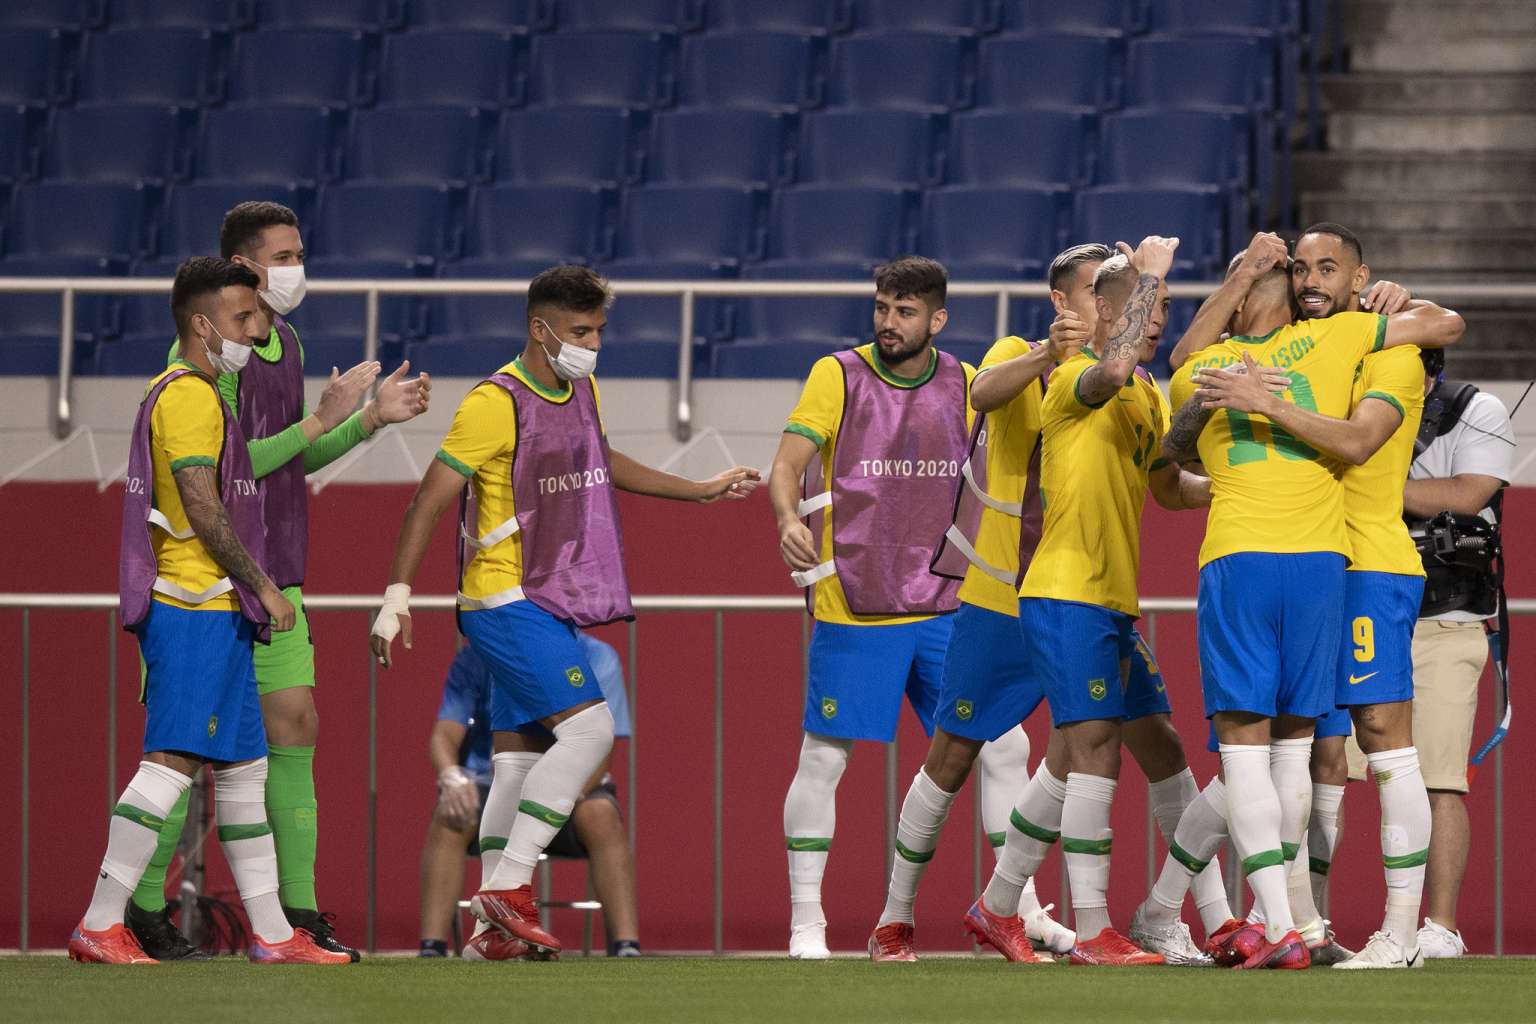 Brasil 1 x 0 Egito – Matheus Cunha marca e seleção segue vivo em busca do bi olímpico